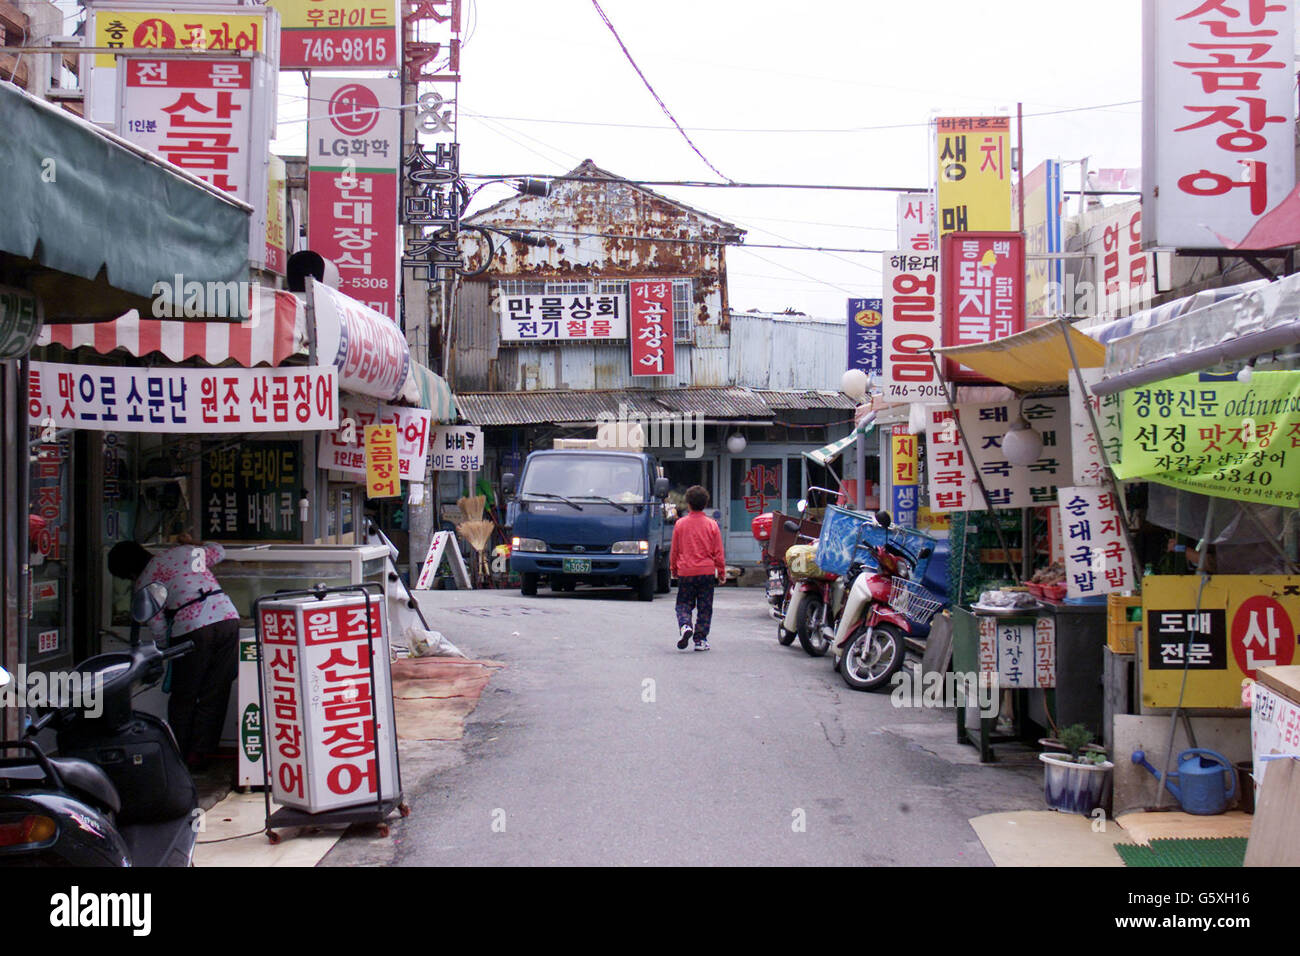 Piccoli negozi e bancarelle di mercato fiancheggiano questa strada a Busan dove gli edifici sono coperti da vari cartelli e annunci. Foto Stock